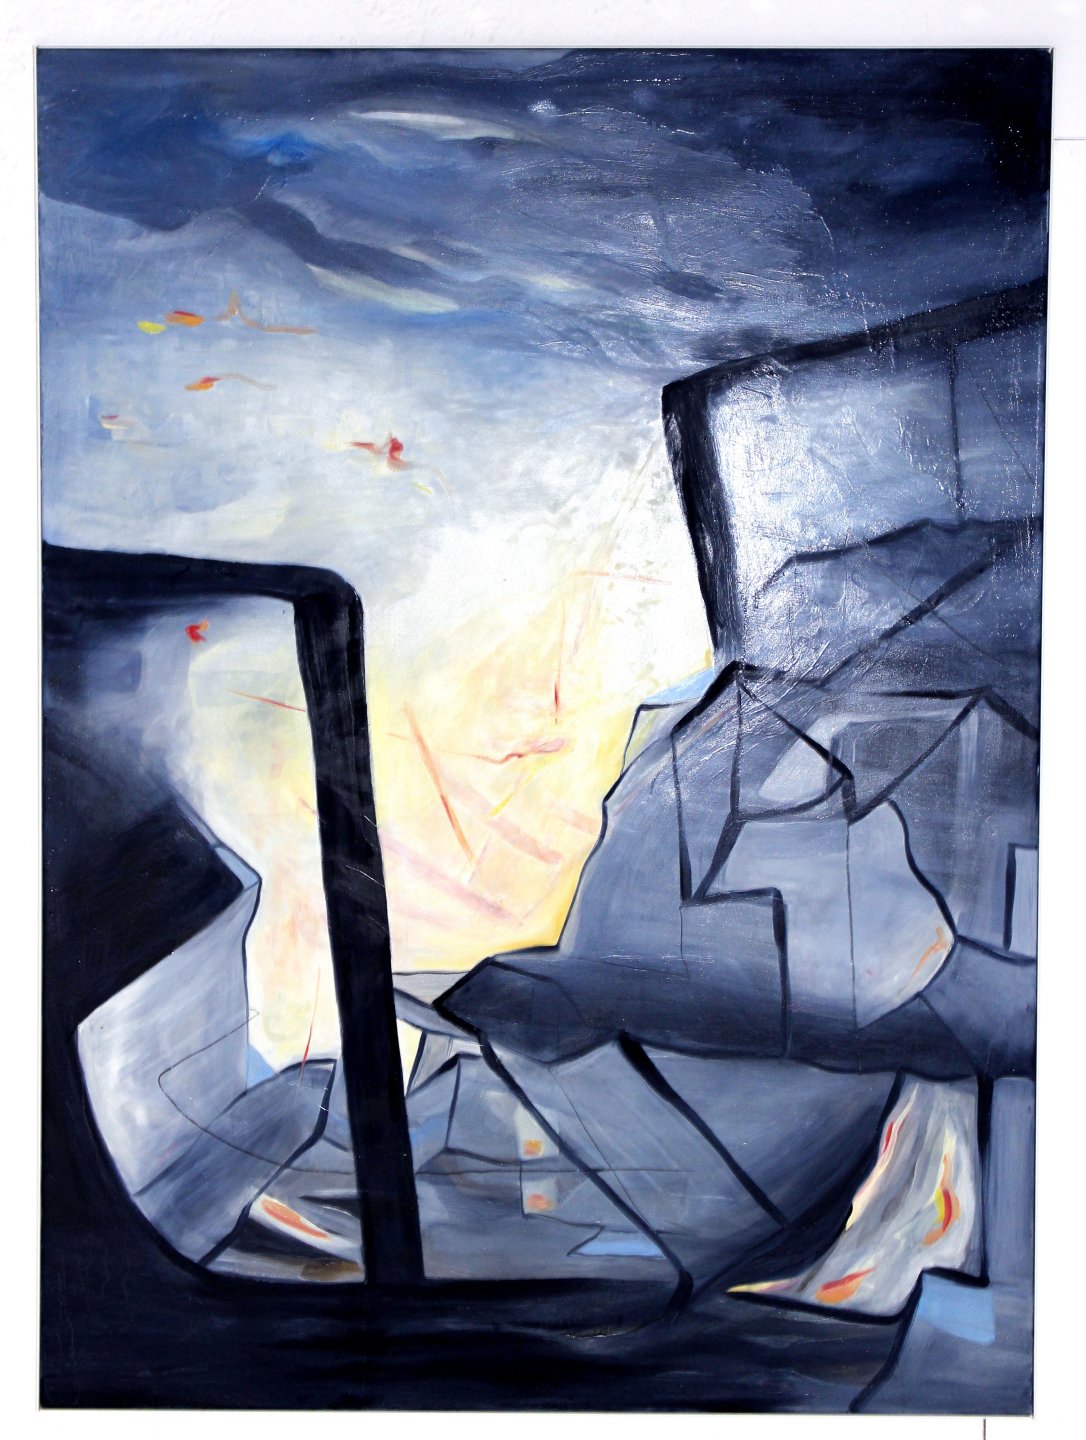 Galerie Benjamin Eck München SOFIE BJÄRNRAM 'Accidentally in context', oil on canvas, 150cm x 110cm, 2016